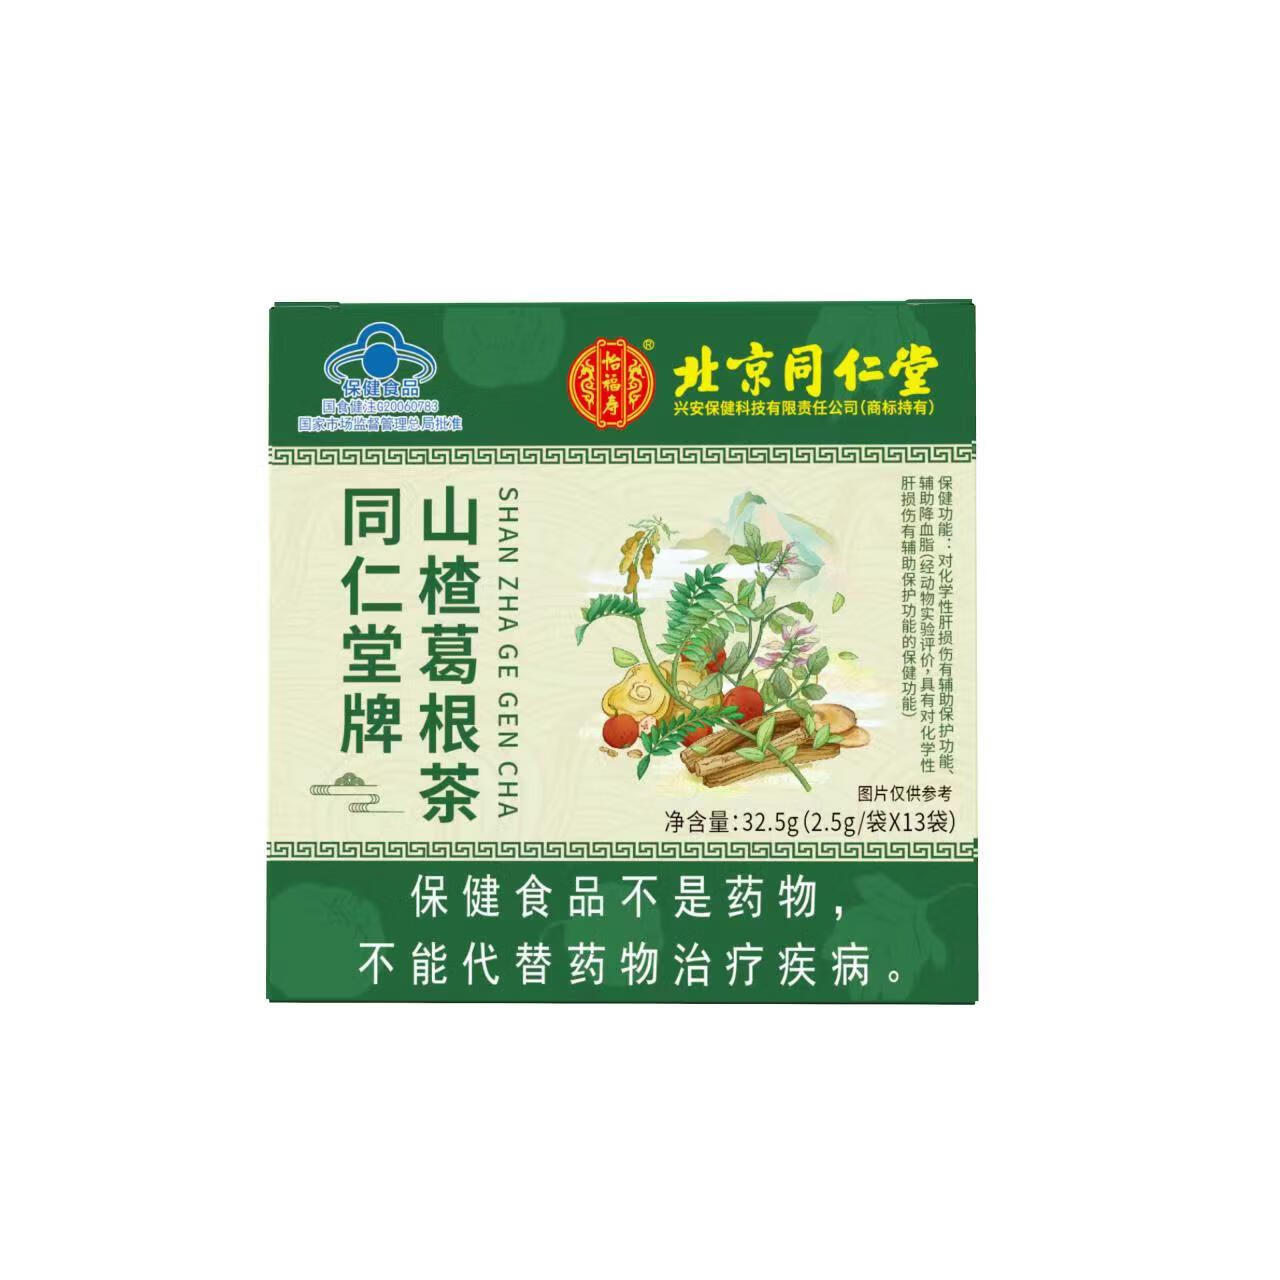 甘油三酯降脂茶北京同仁堂辅助清脂茶葛根山楂降高血脂降胆固醇甘油三酯的茶